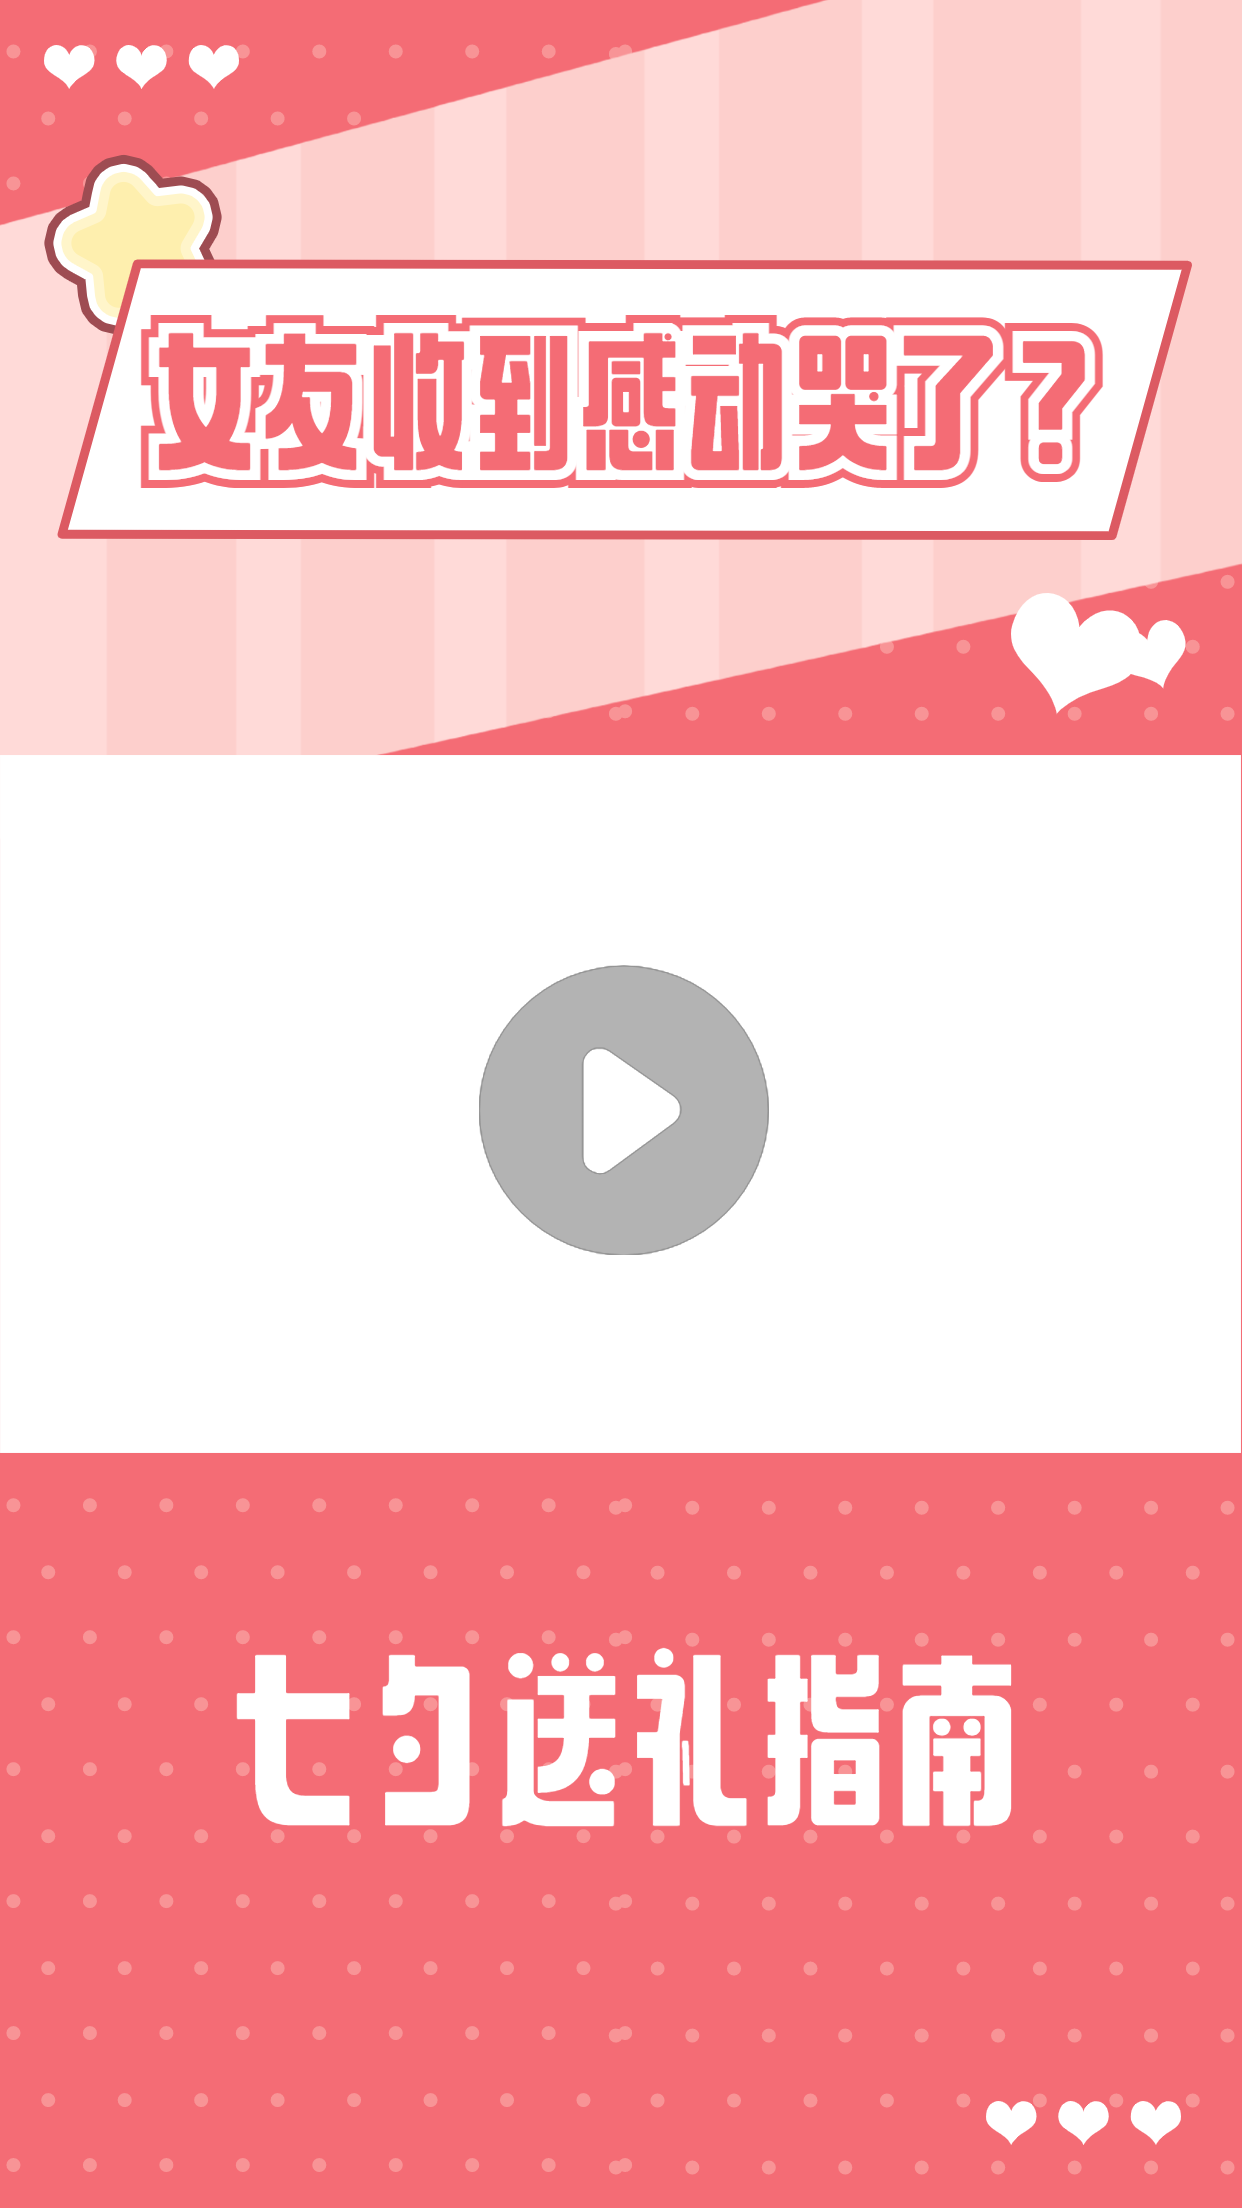 七夕情人节简约甜蜜短视频边框背景预览效果